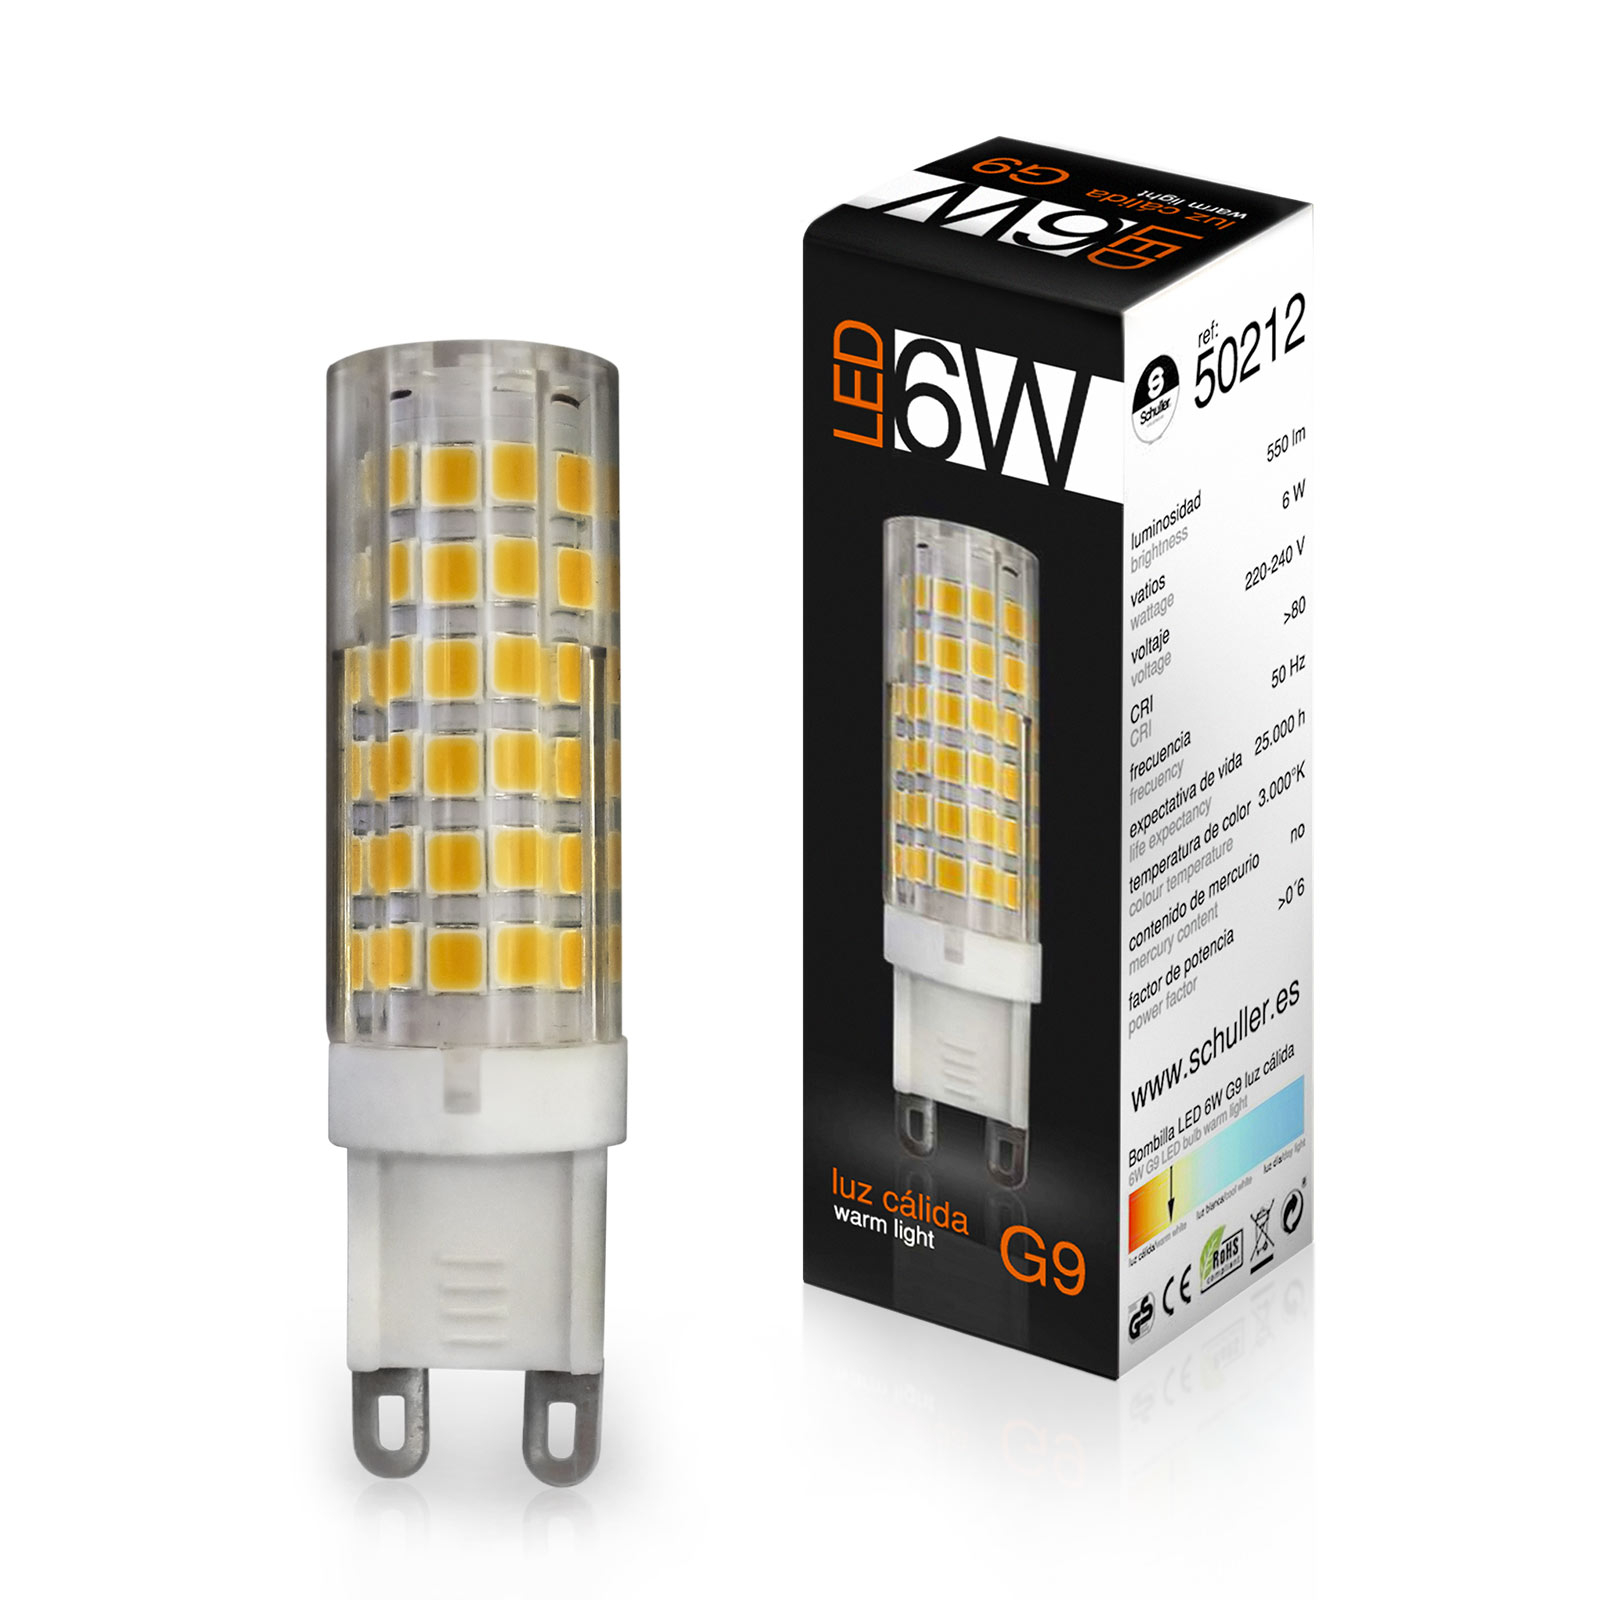 LED bi-pin bulb G9 6W 3,000K